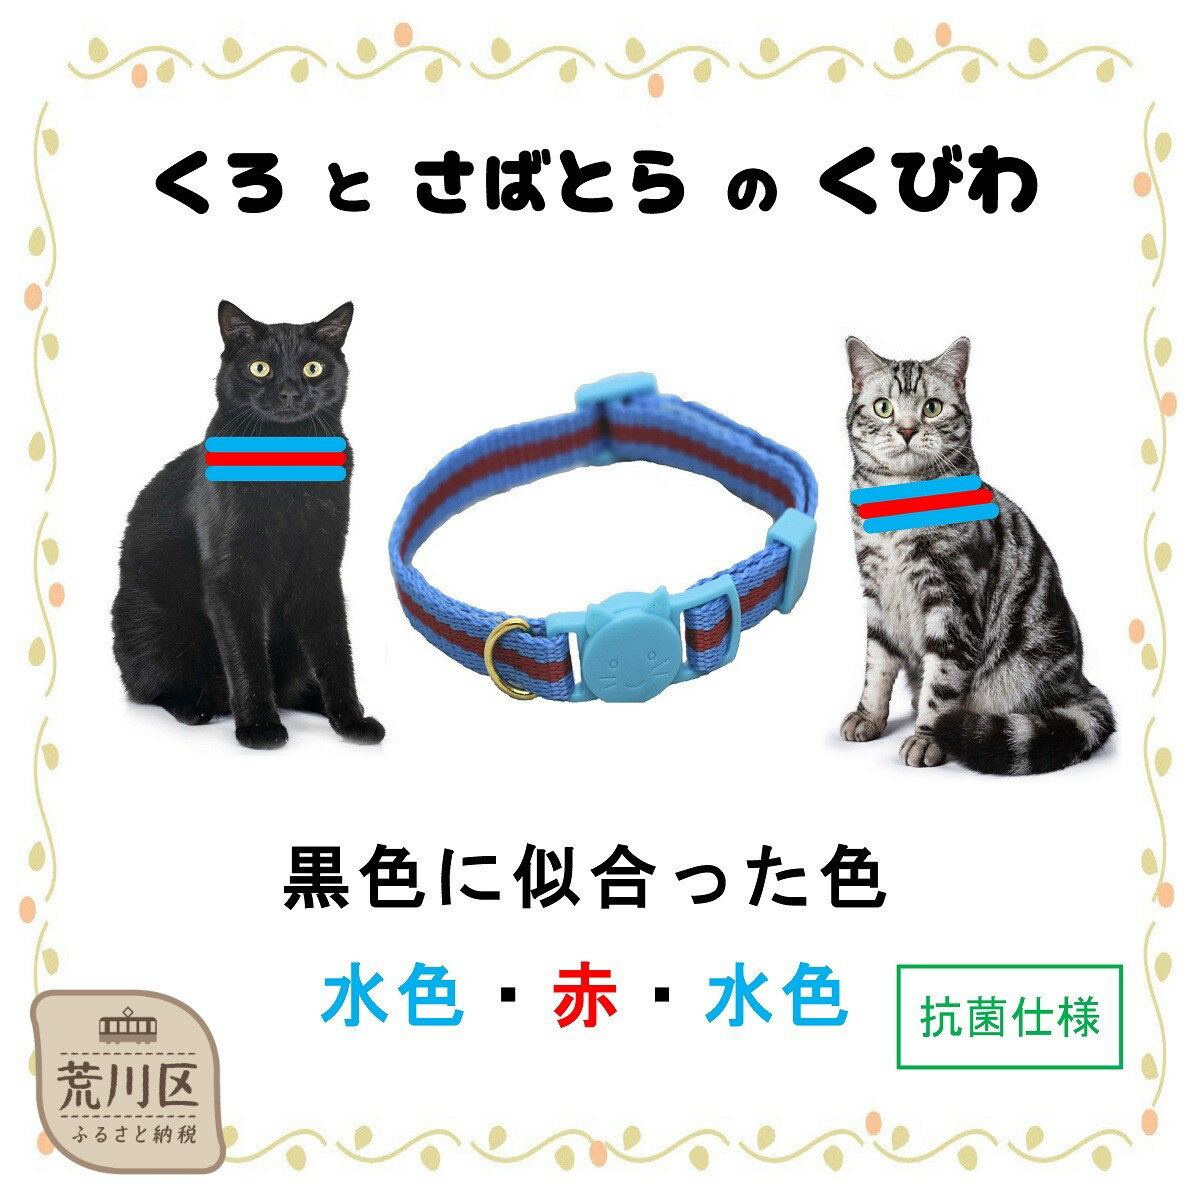 猫用首輪(カラー:水色・赤・水色)[001-011]